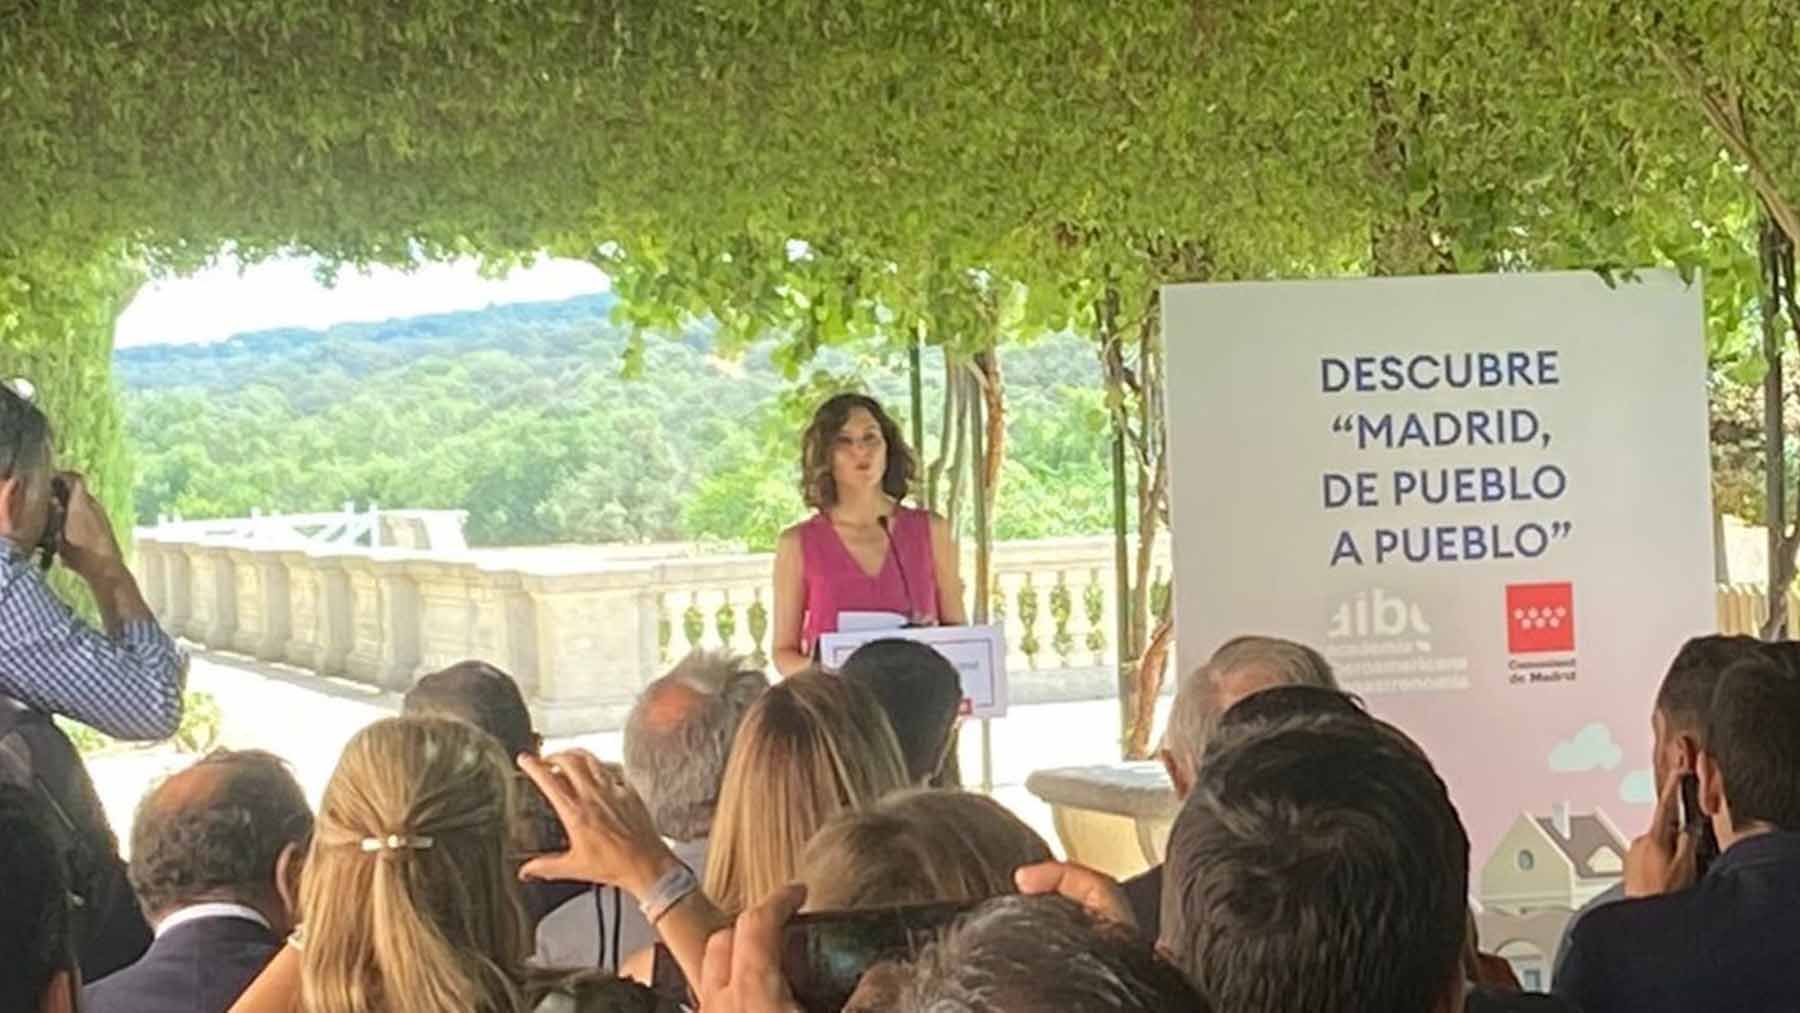 La presidenta de la Comunidad de Madrid, Isabel Díaz Ayuso, presenta el proyecto Madrid, de pueblo a pueblo, destinado al impulso del turismo gastronómico.